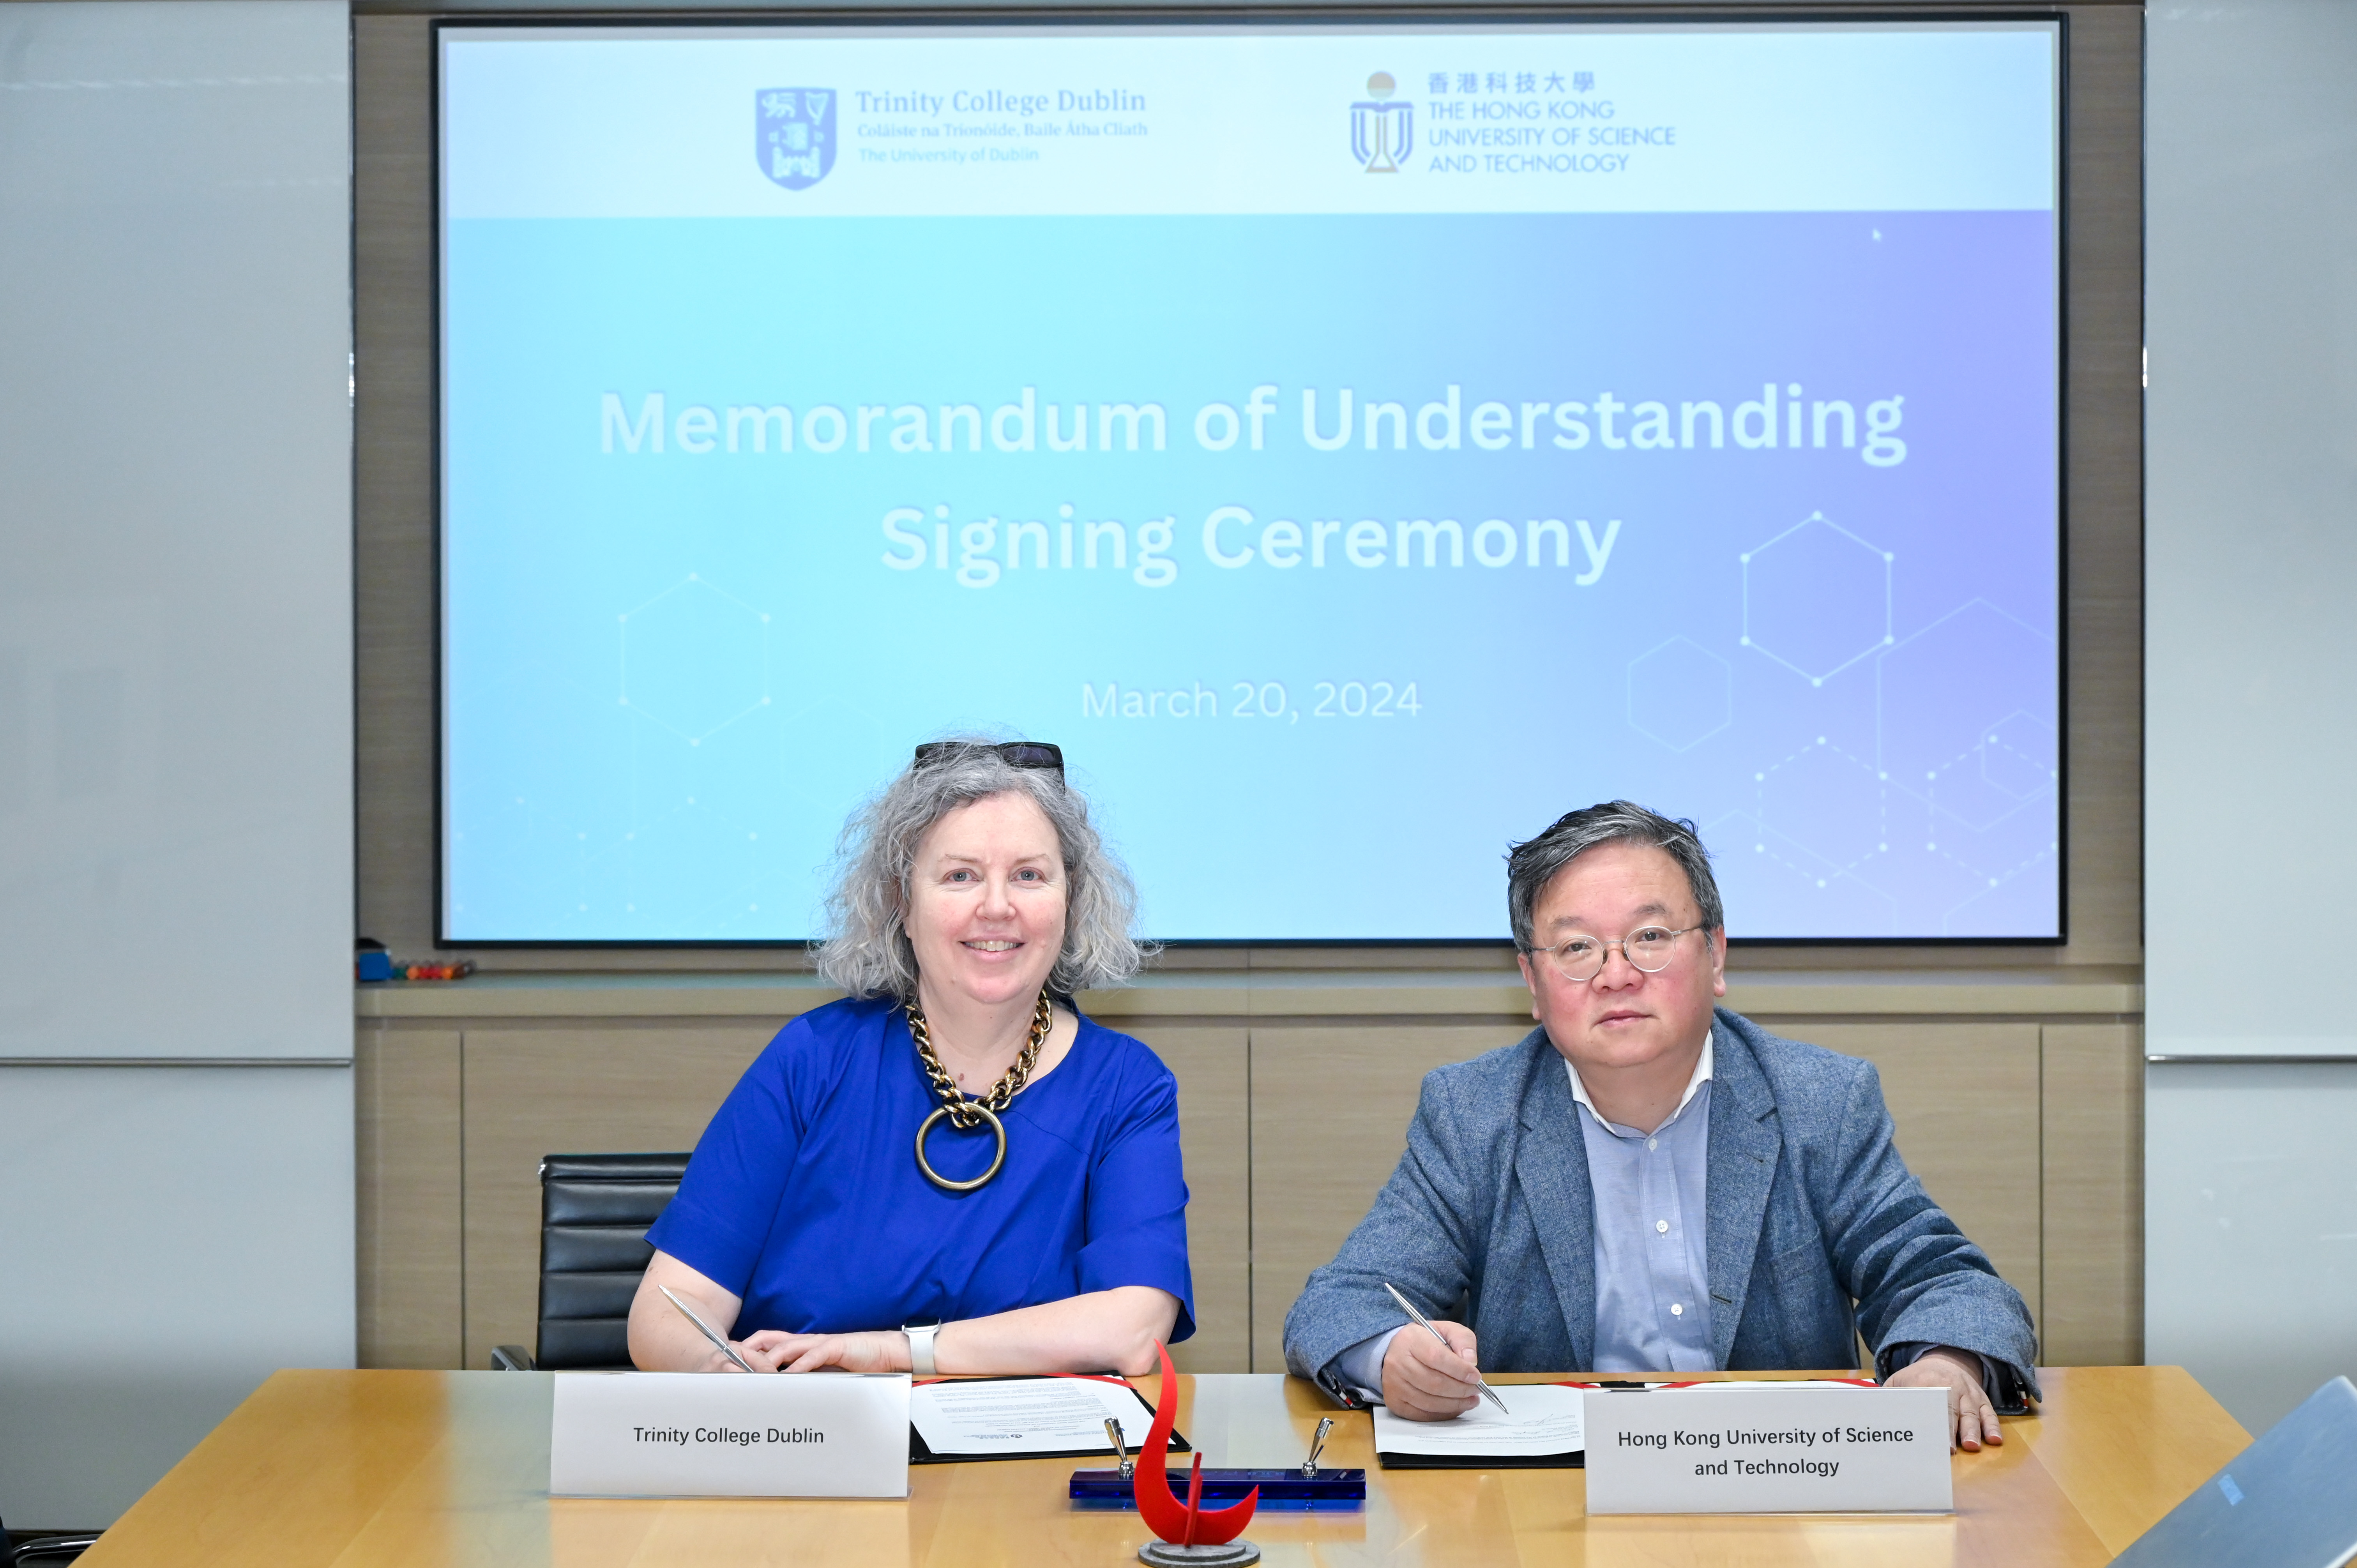 都柏林聖三一學院校長Linda DOYLE教授與科大首席副校長郭毅可教授簽署合作備忘錄和學生交換協議。